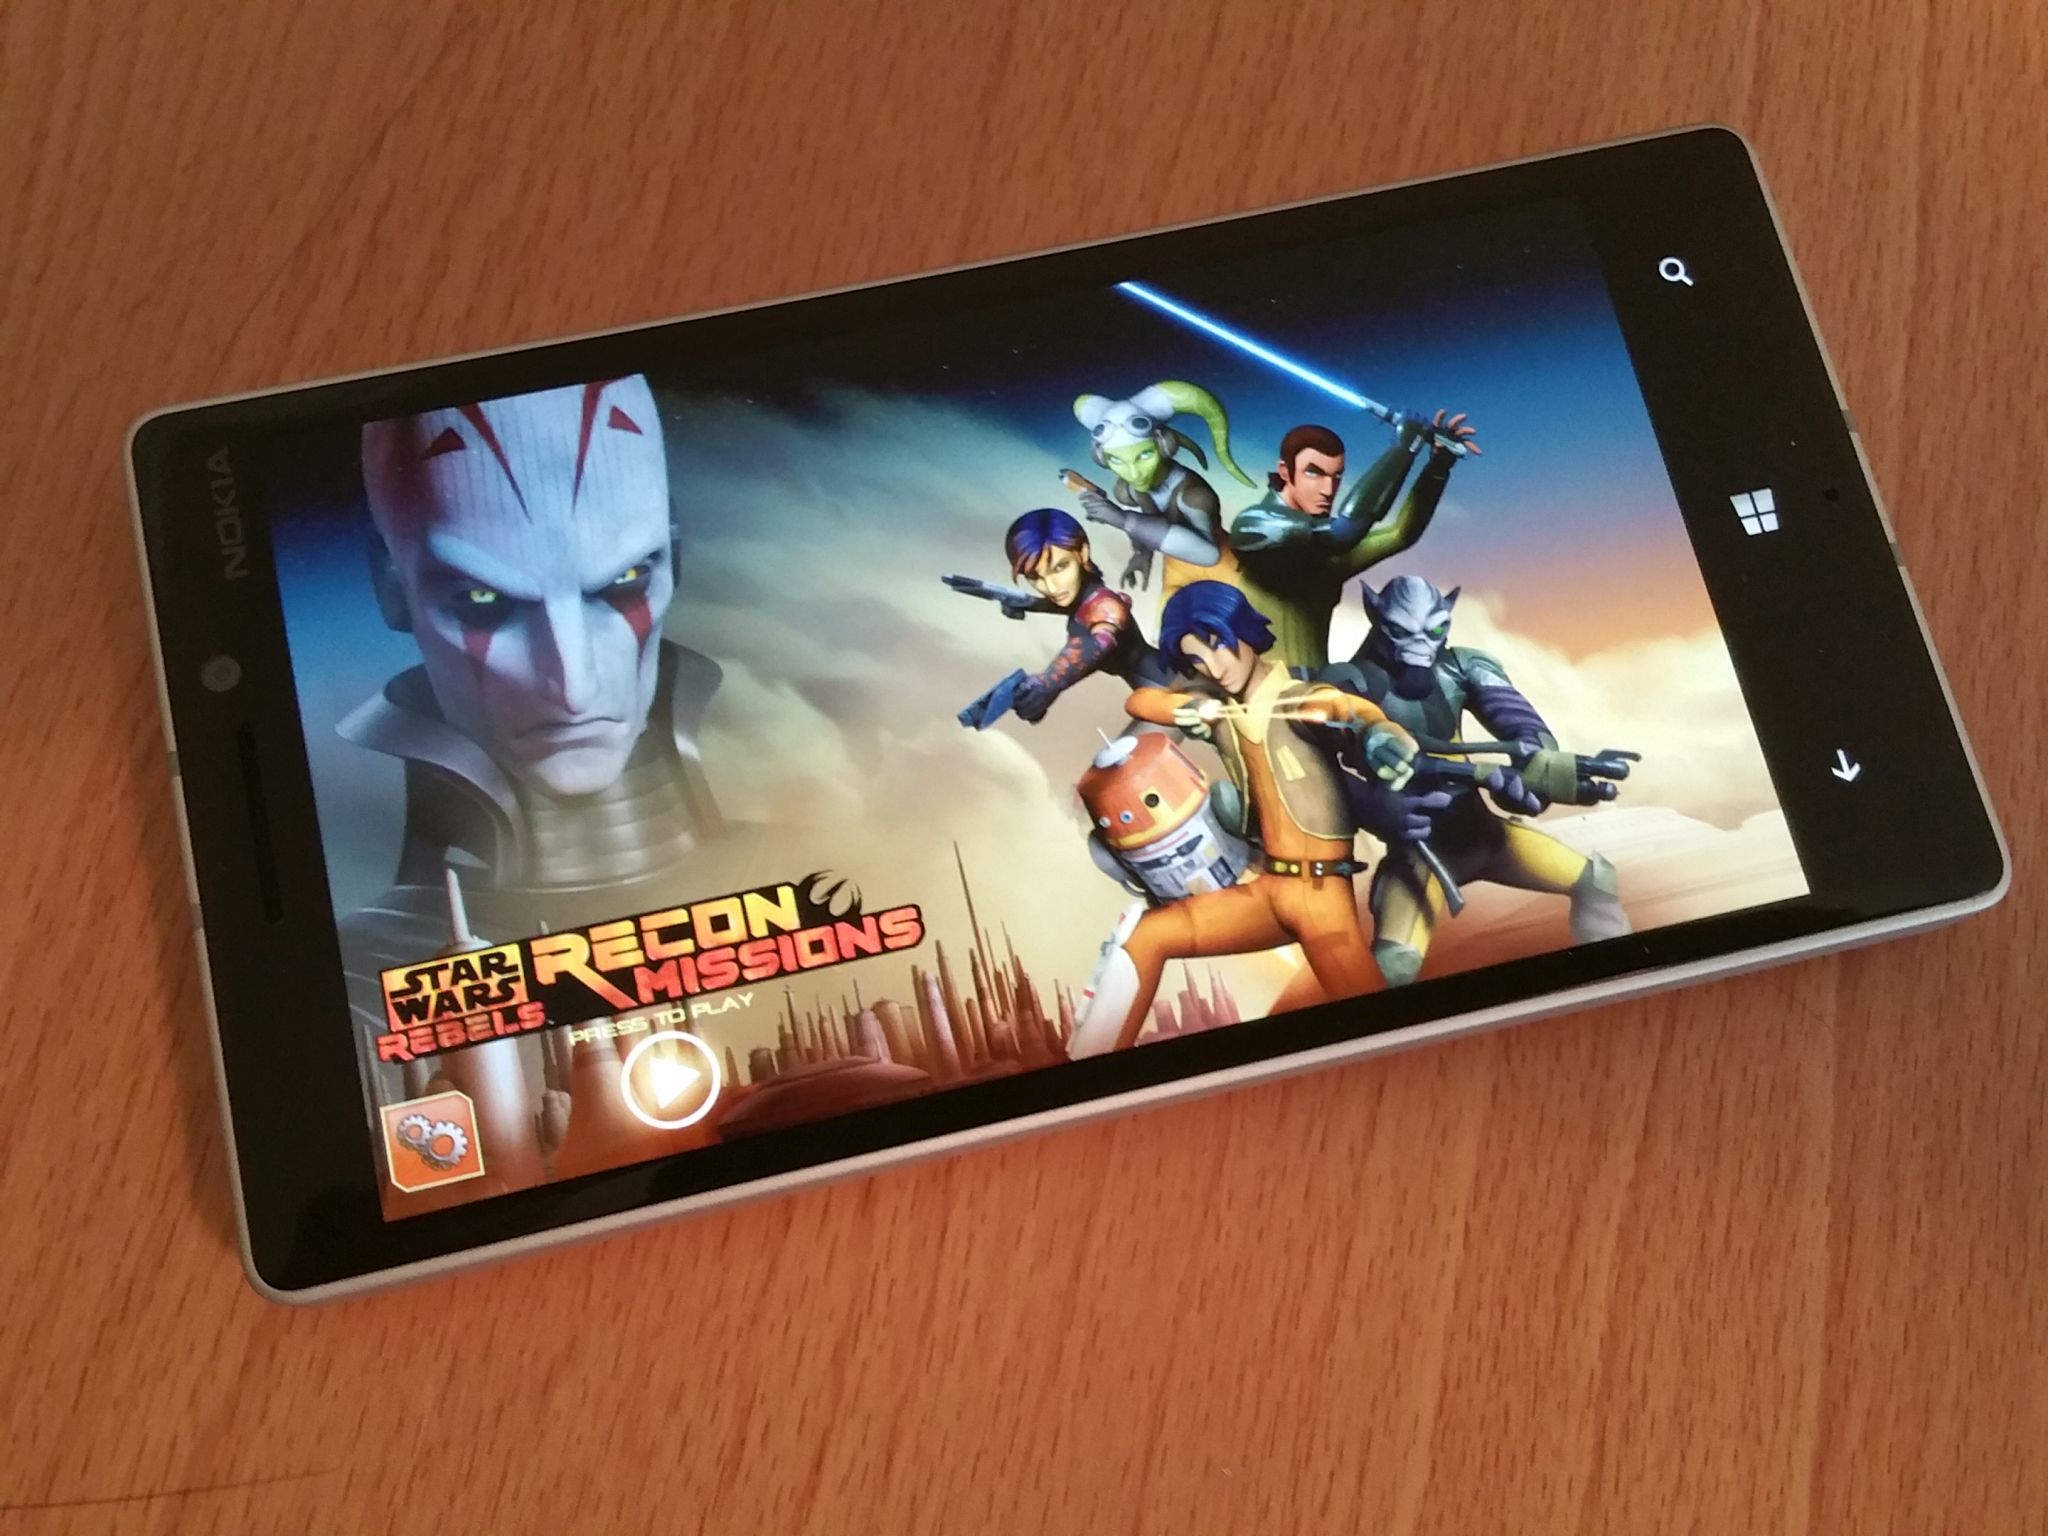 Star Wars Rebels on Windows Phone